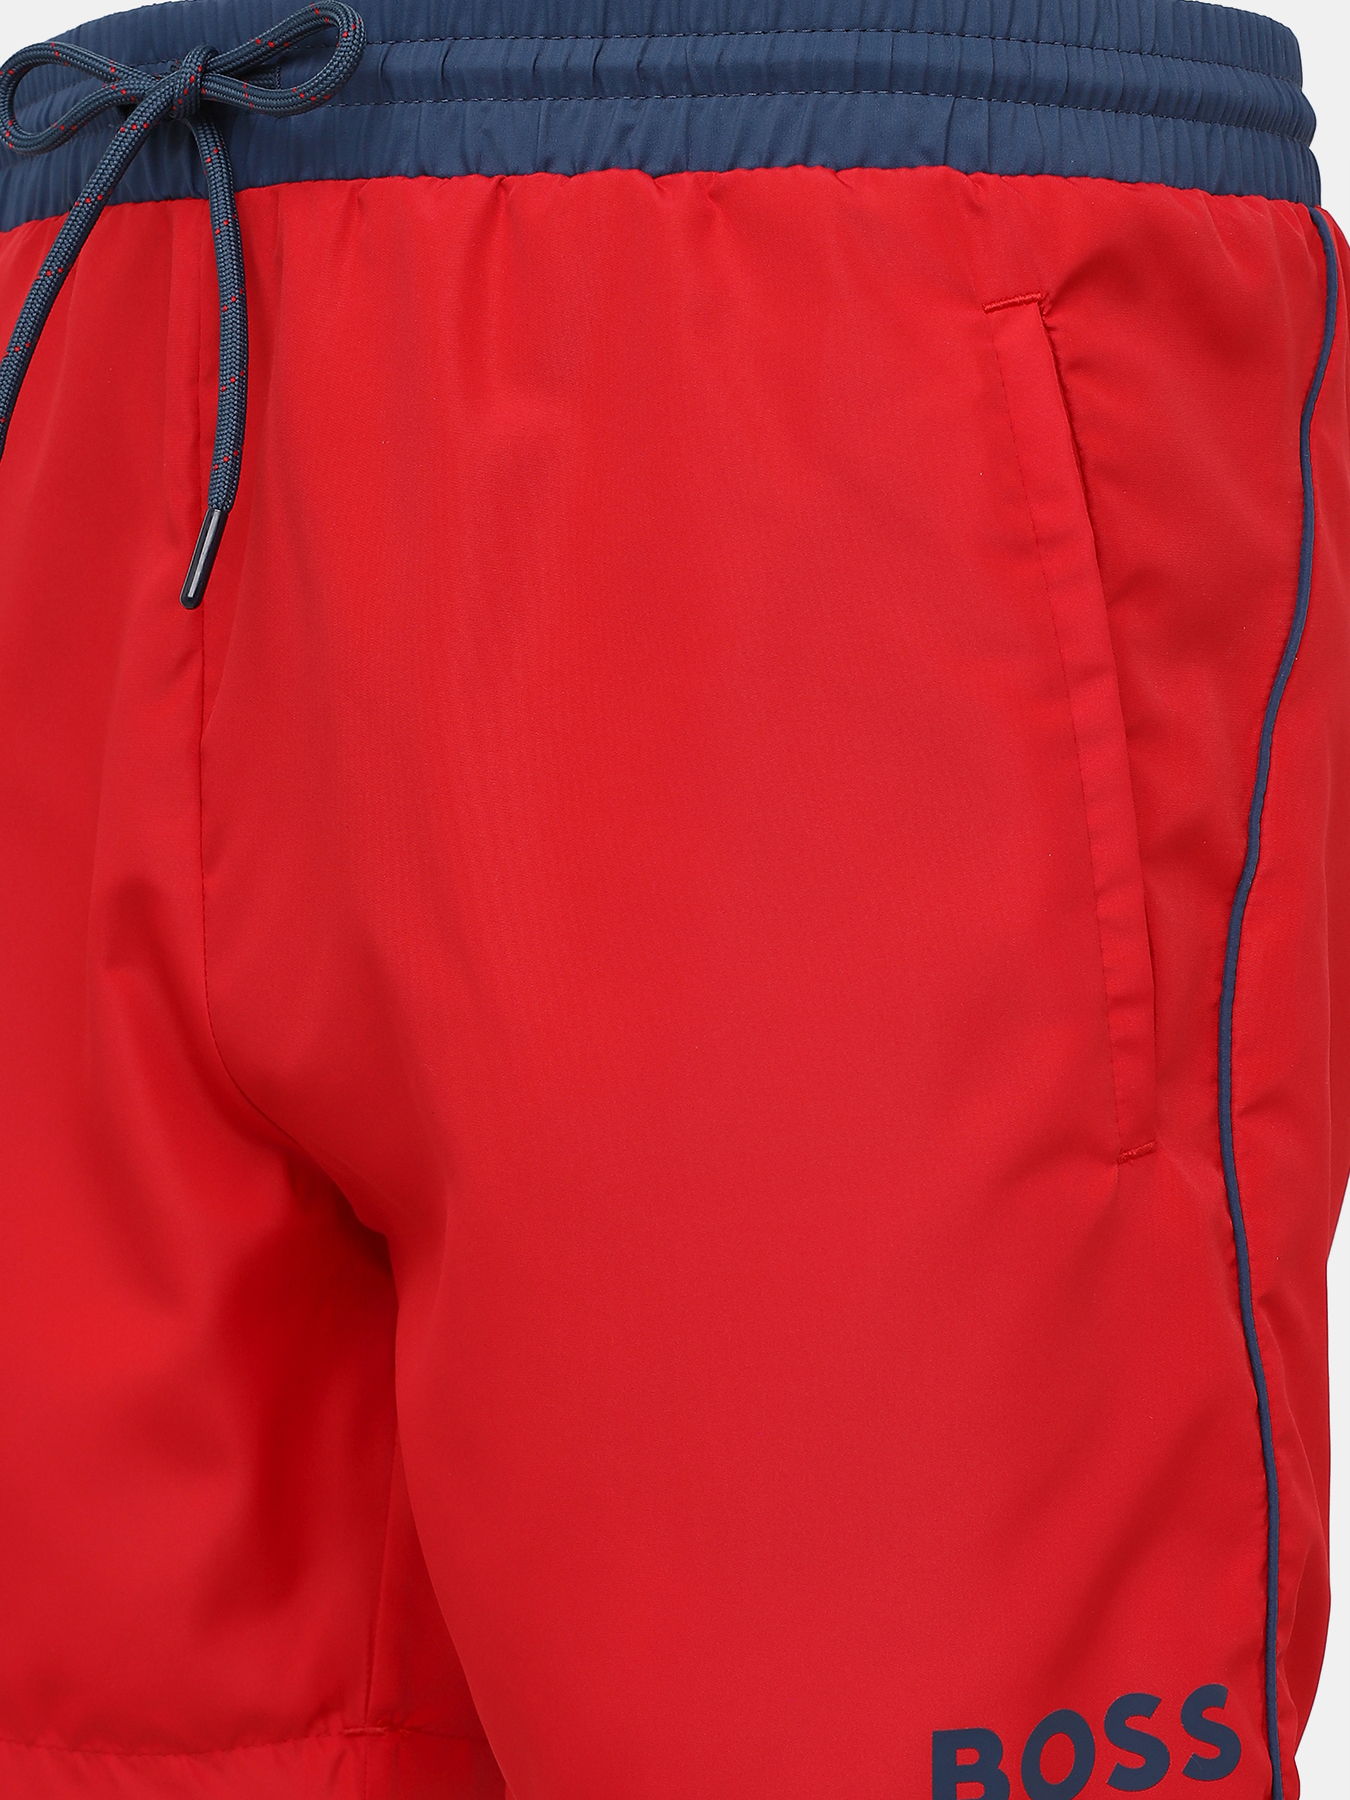 Плавательные шорты Starfish BOSS 416767-046, цвет красный, размер 54 - фото 3